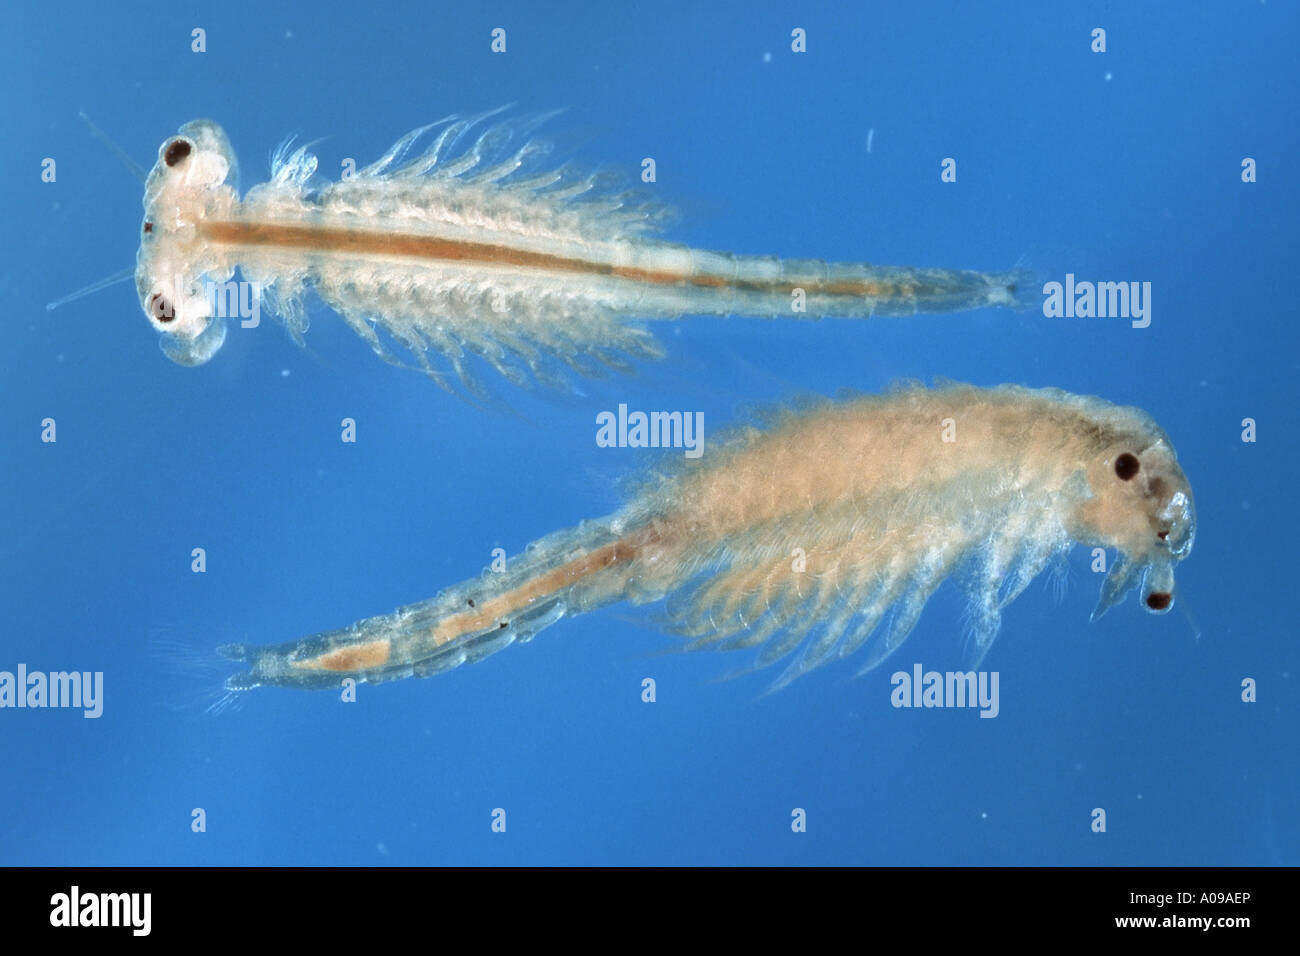 brine shrimp (Artemia salina Stock Photo - Alamy